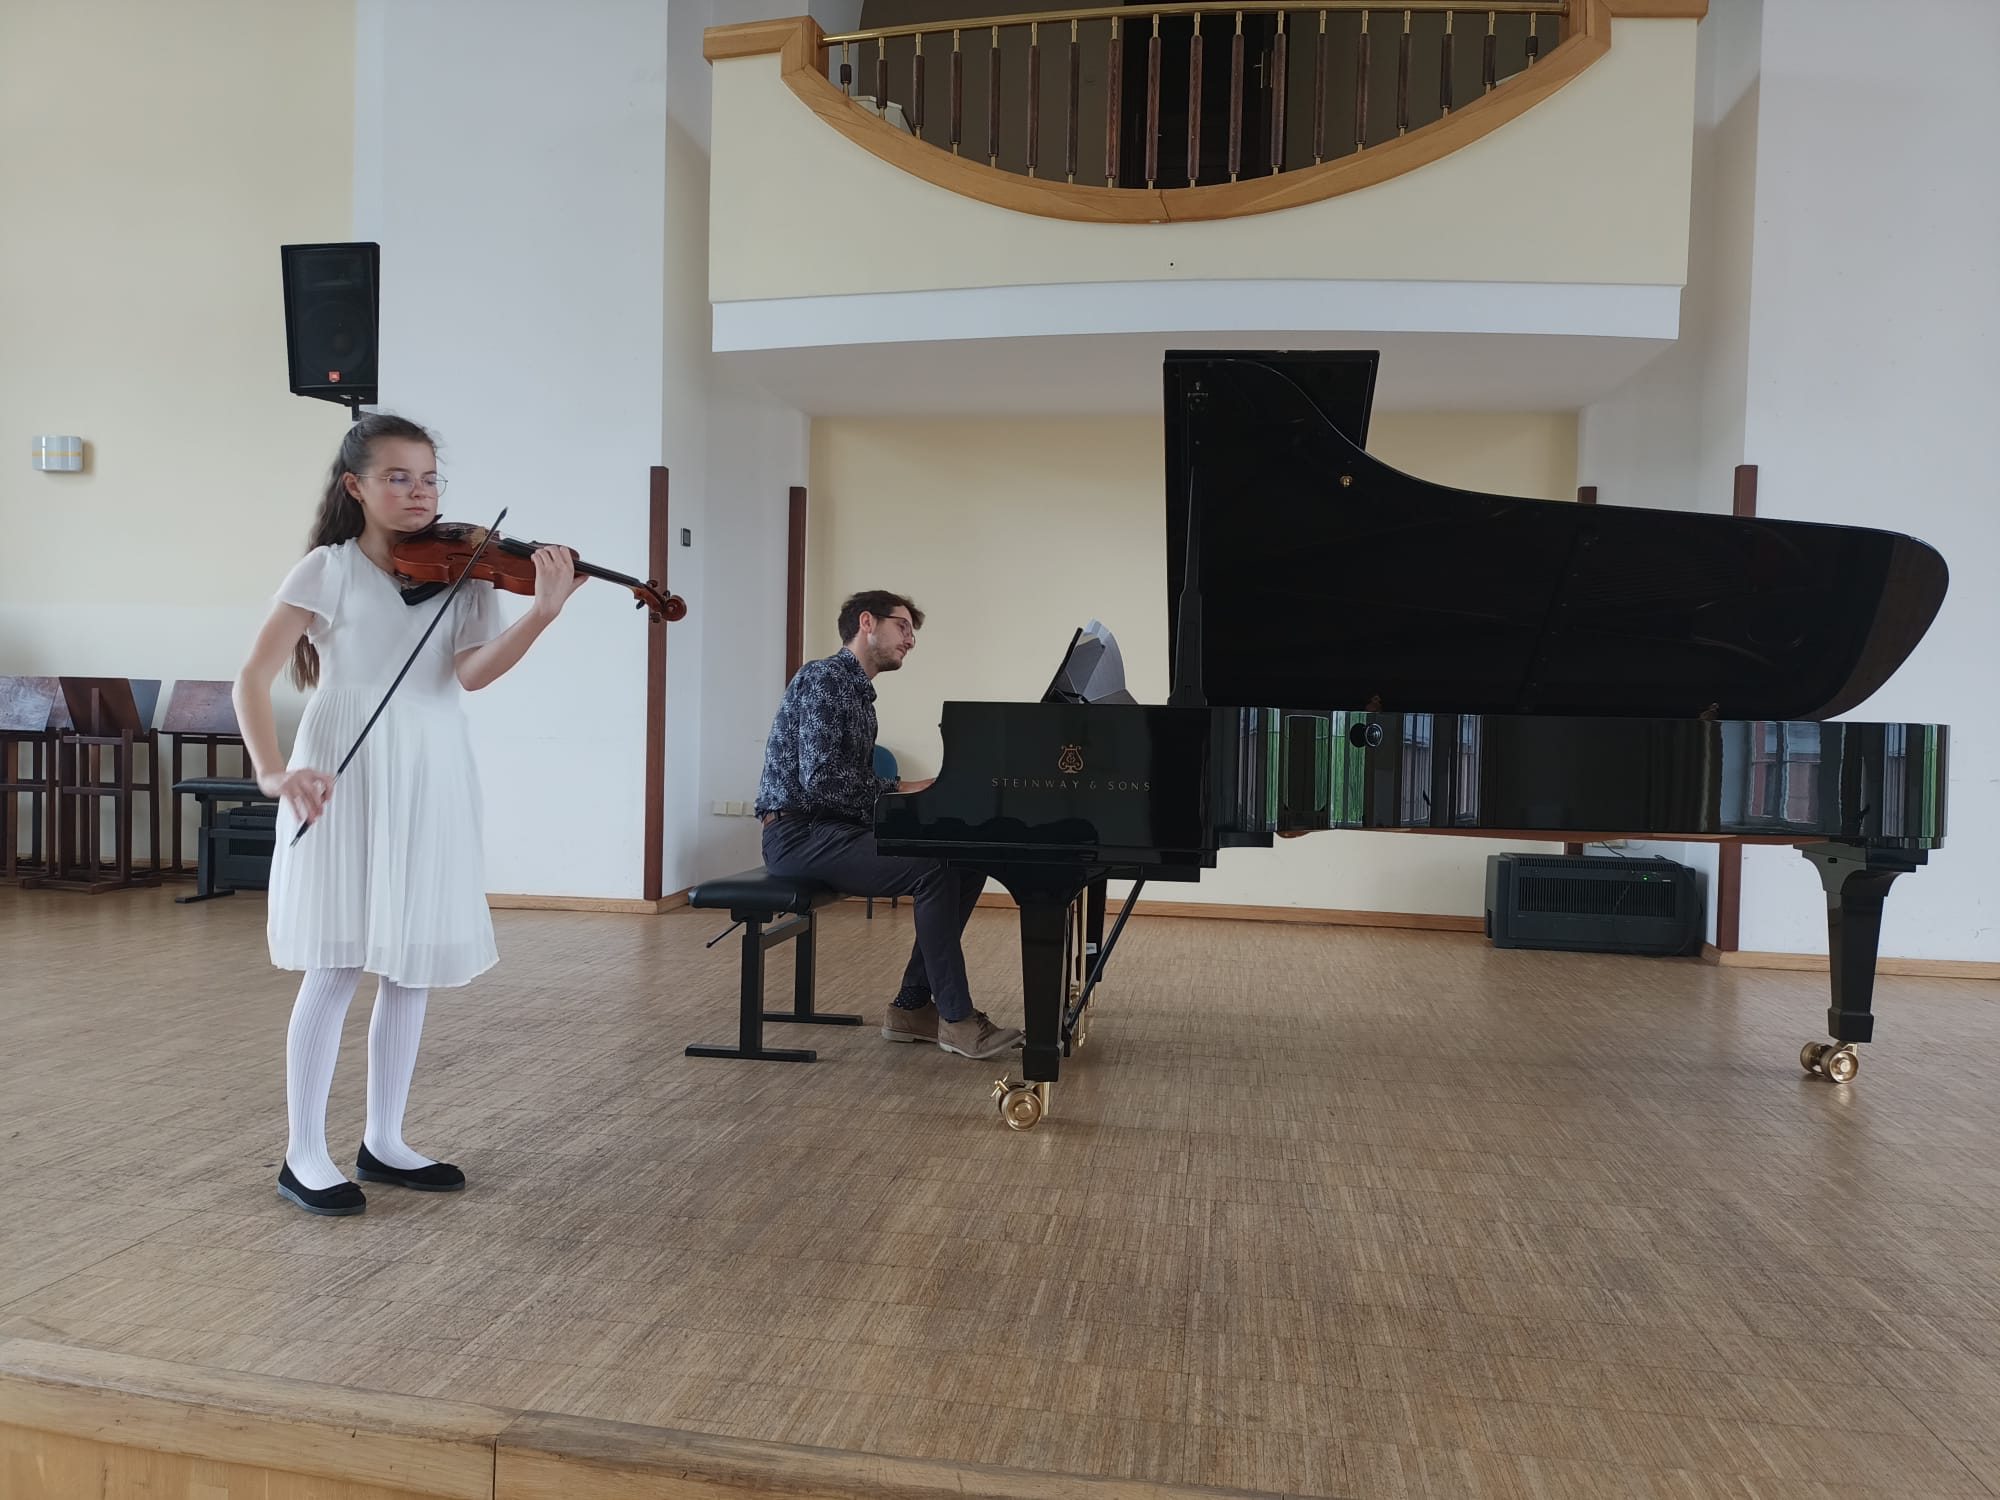 Na scenie po lewej stronie uczennica naszej szkoły w białej sukience grająca na skrzypcach. w Tle czarny fortepian,a przy nim akompaniator.